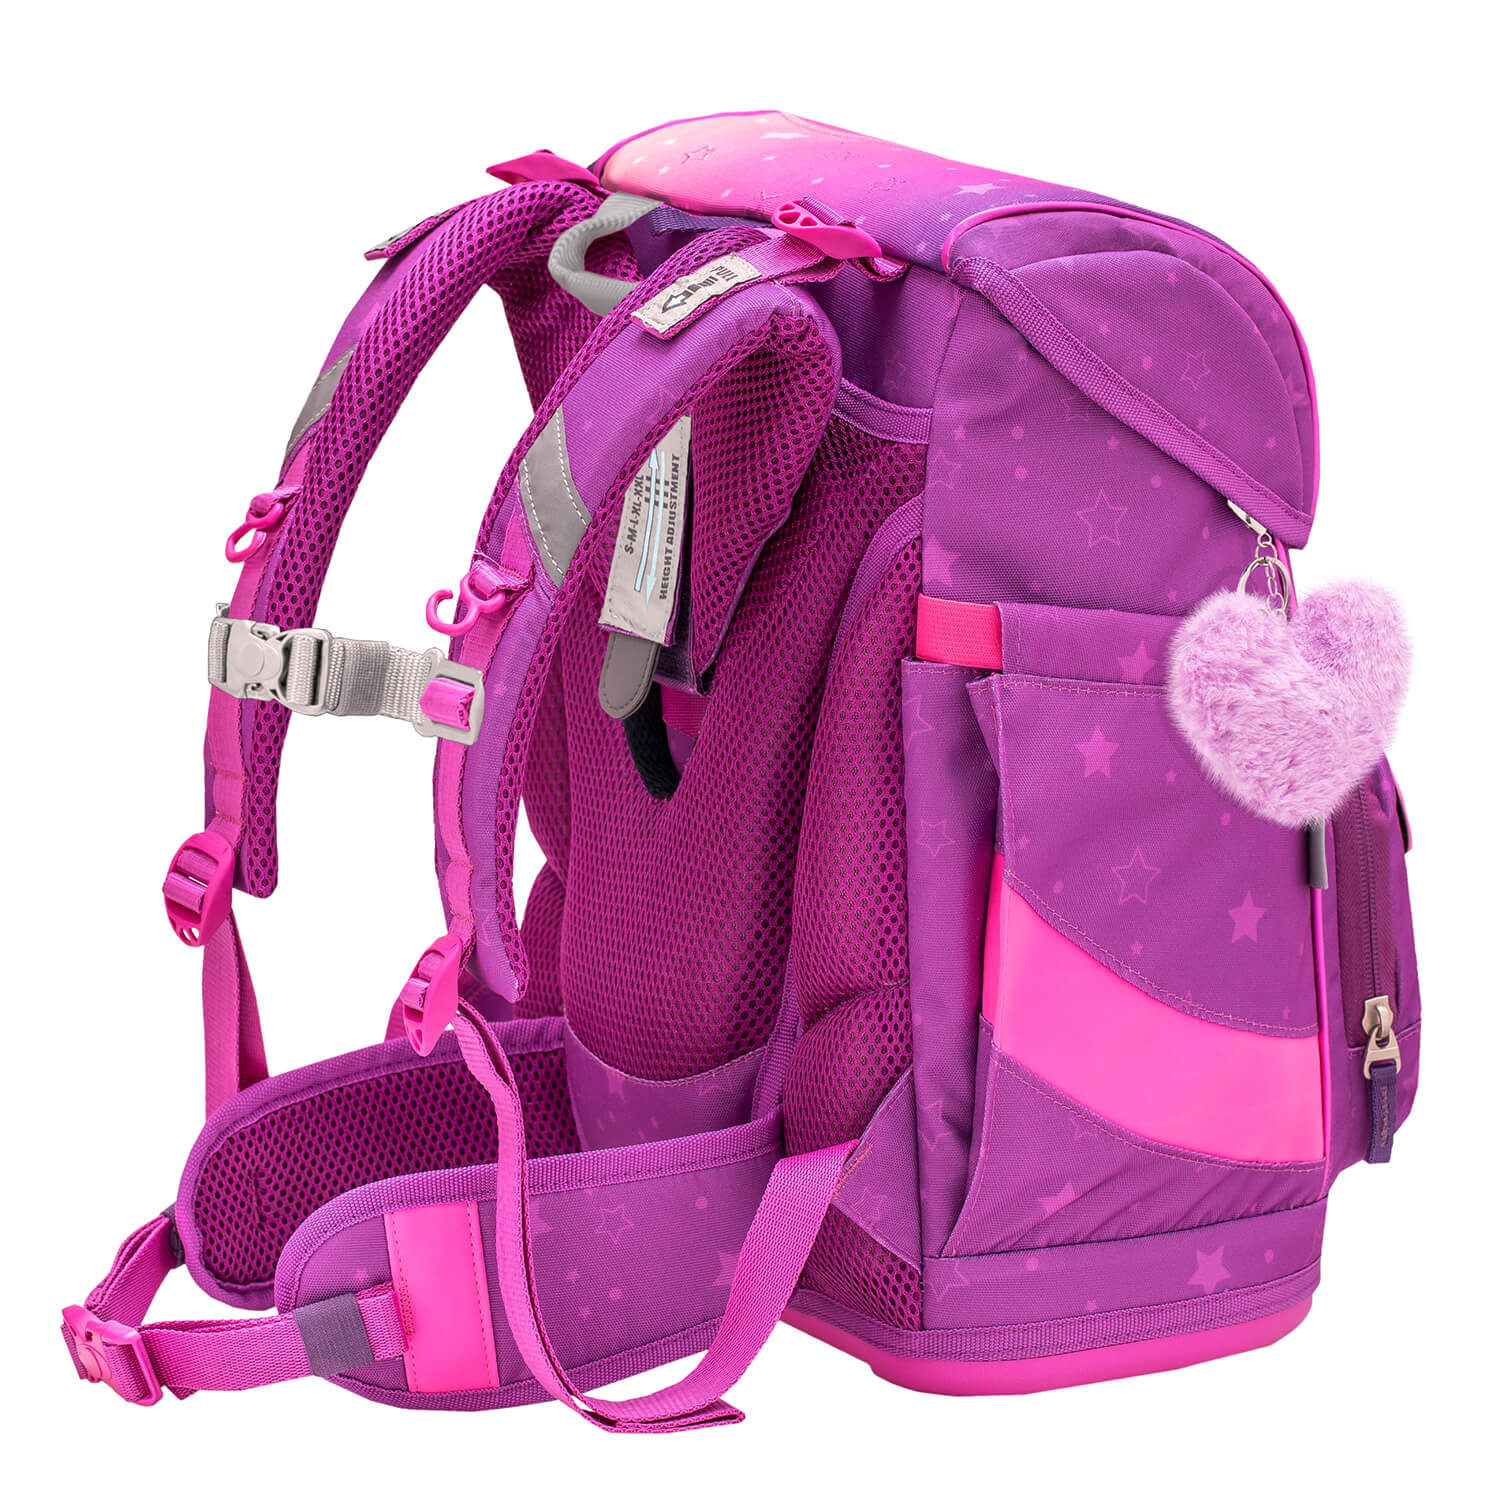 Smarty Ombre 2 schoolbag set 5 pcs